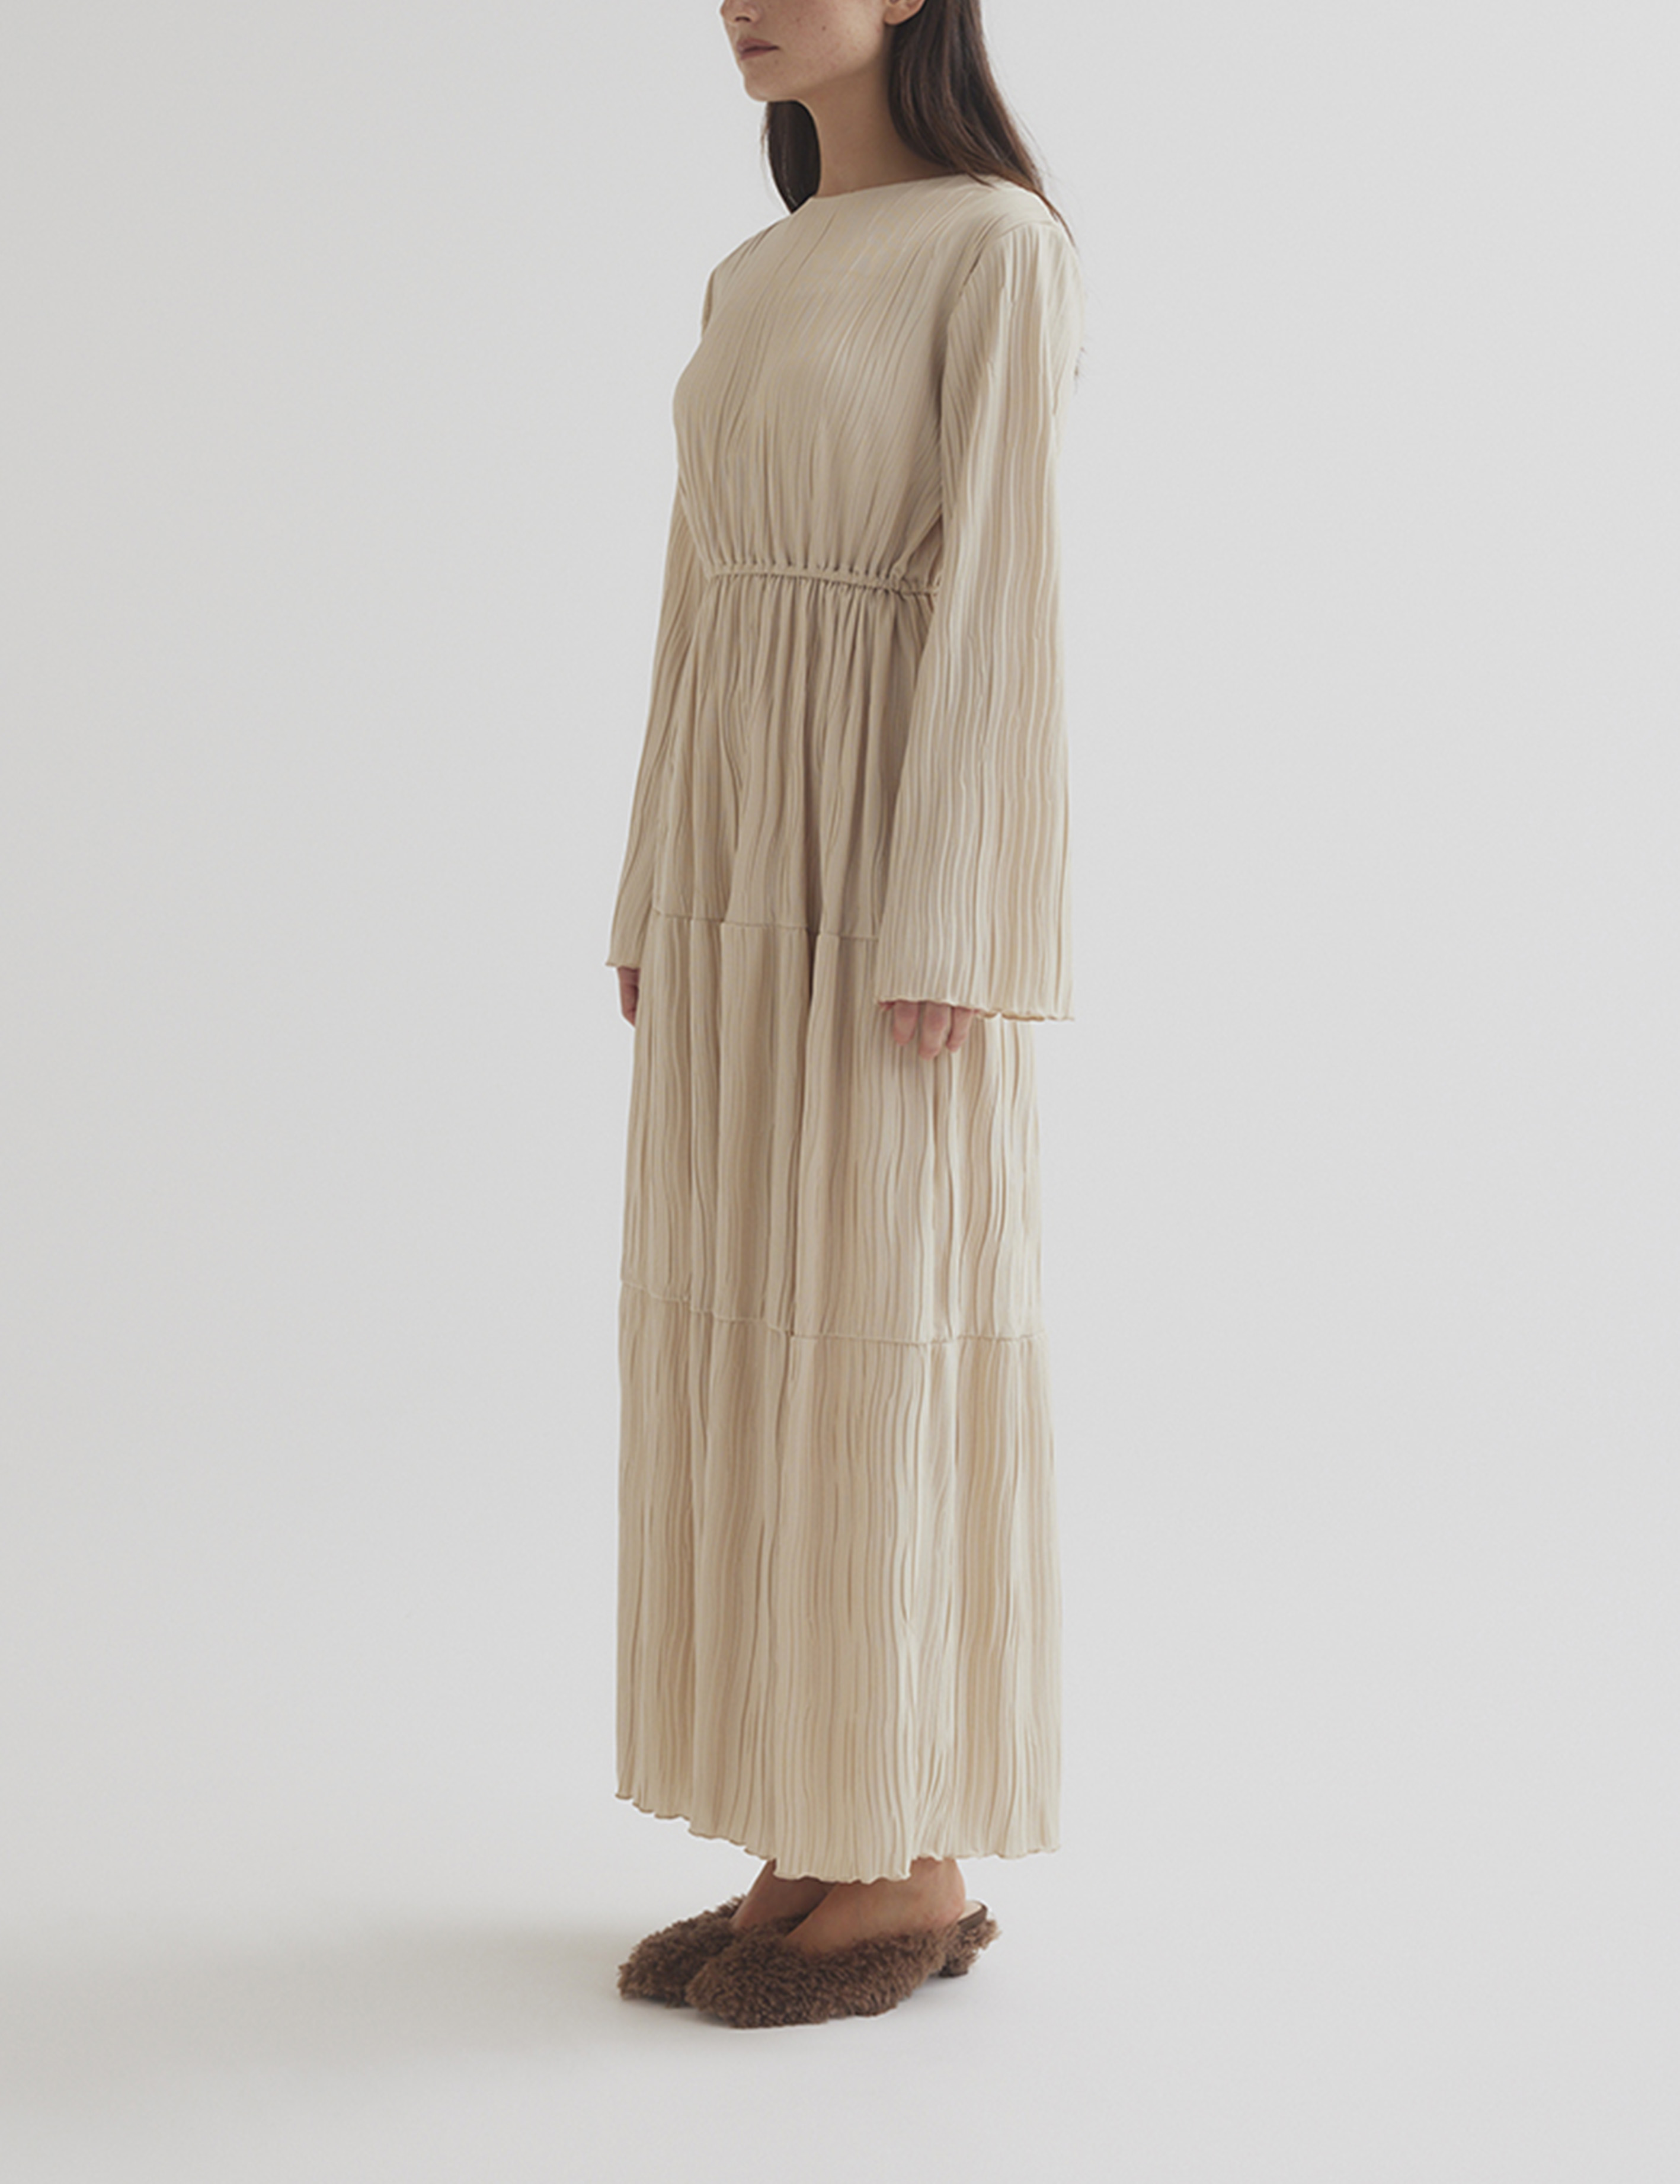 ランデブーRANDEBOO Natural square dress (beige) - ロングワンピース